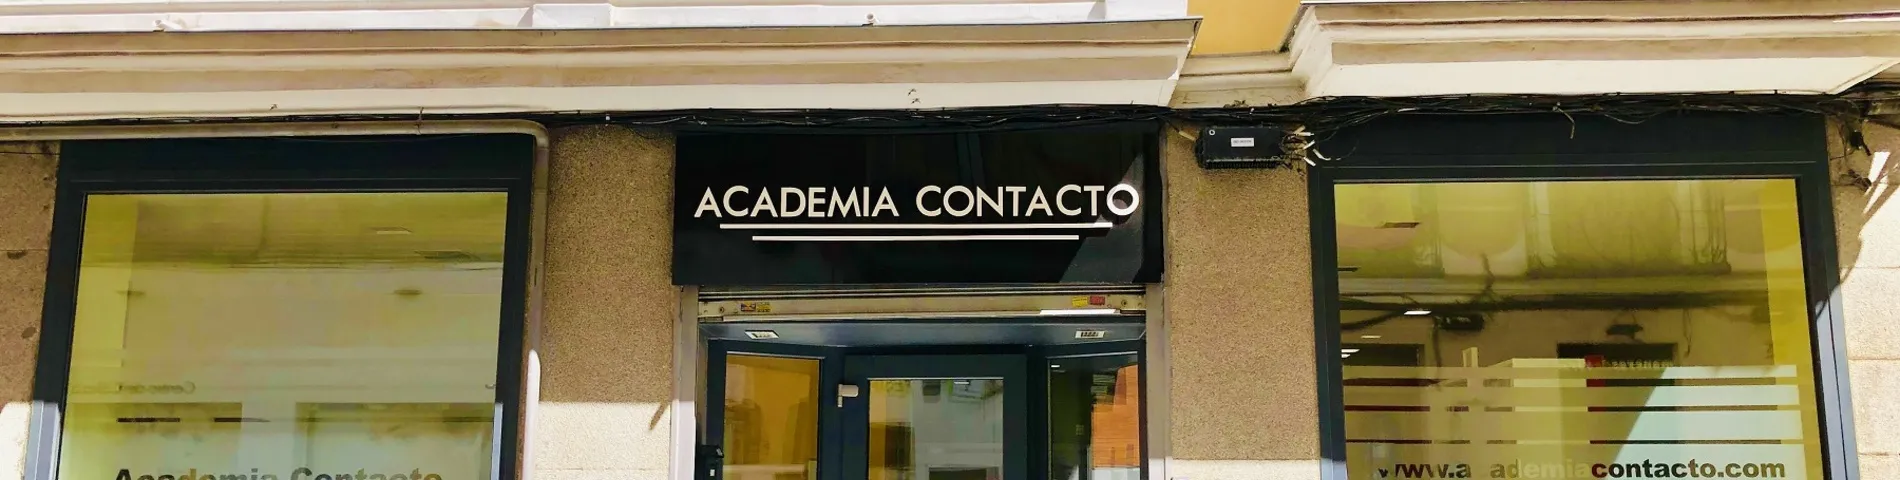 Academia Contacto 사진 1